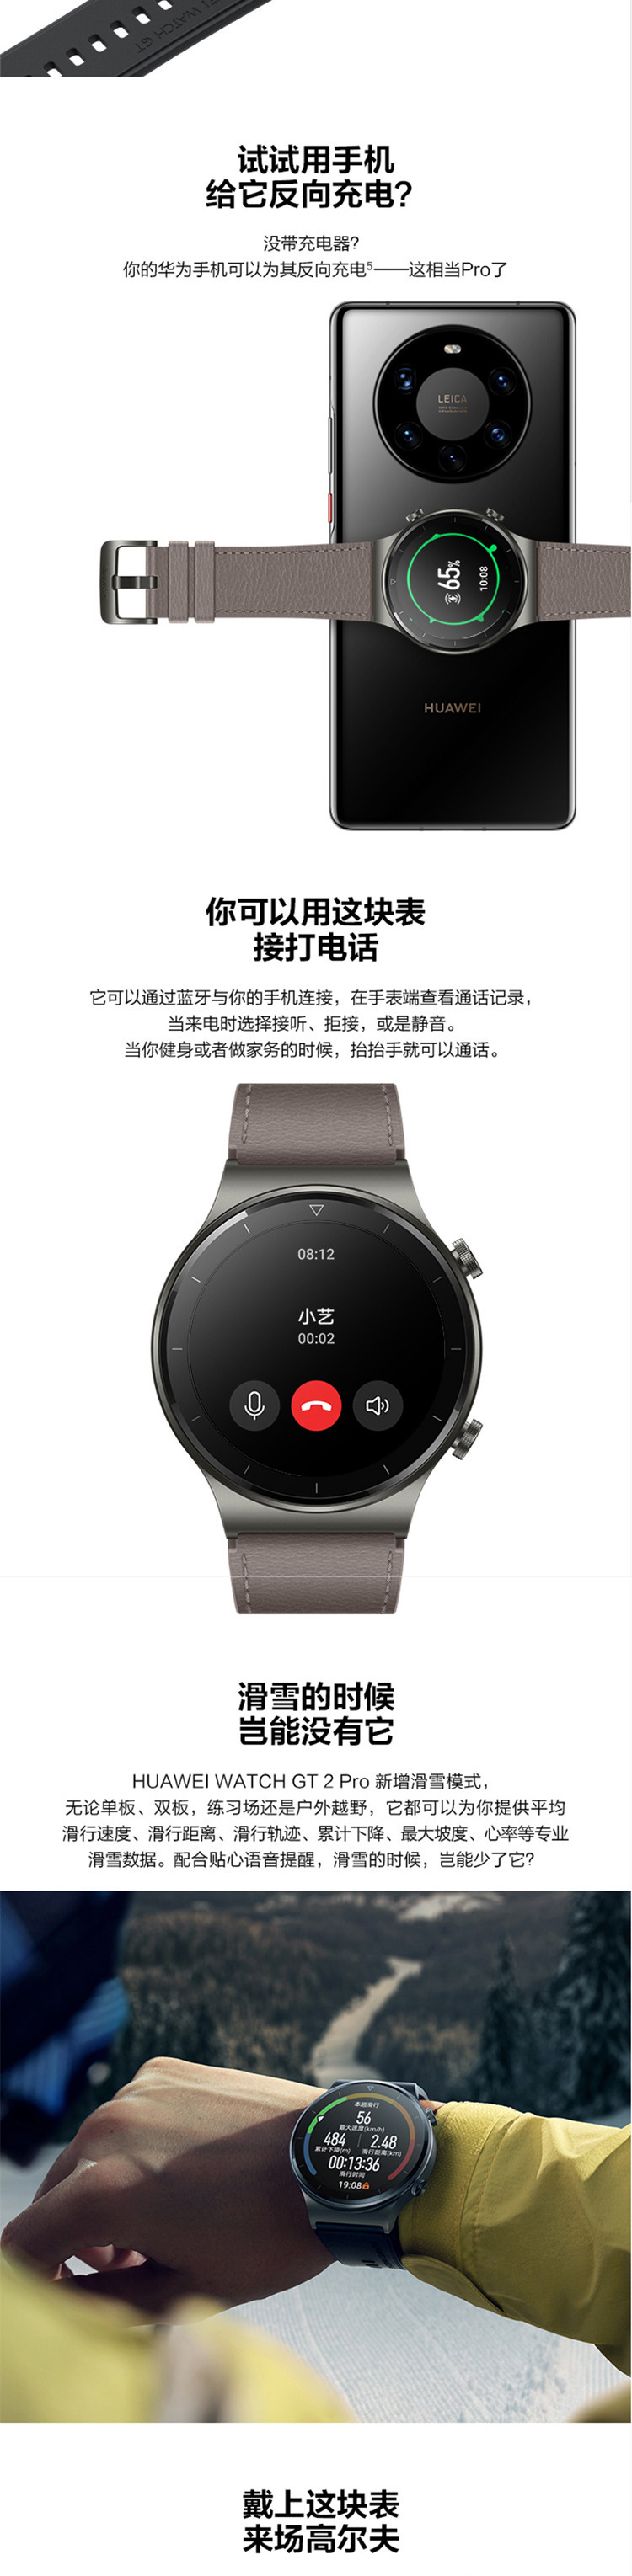 华为HUAWEI WATCH GT 2 Pro 运动智能手表